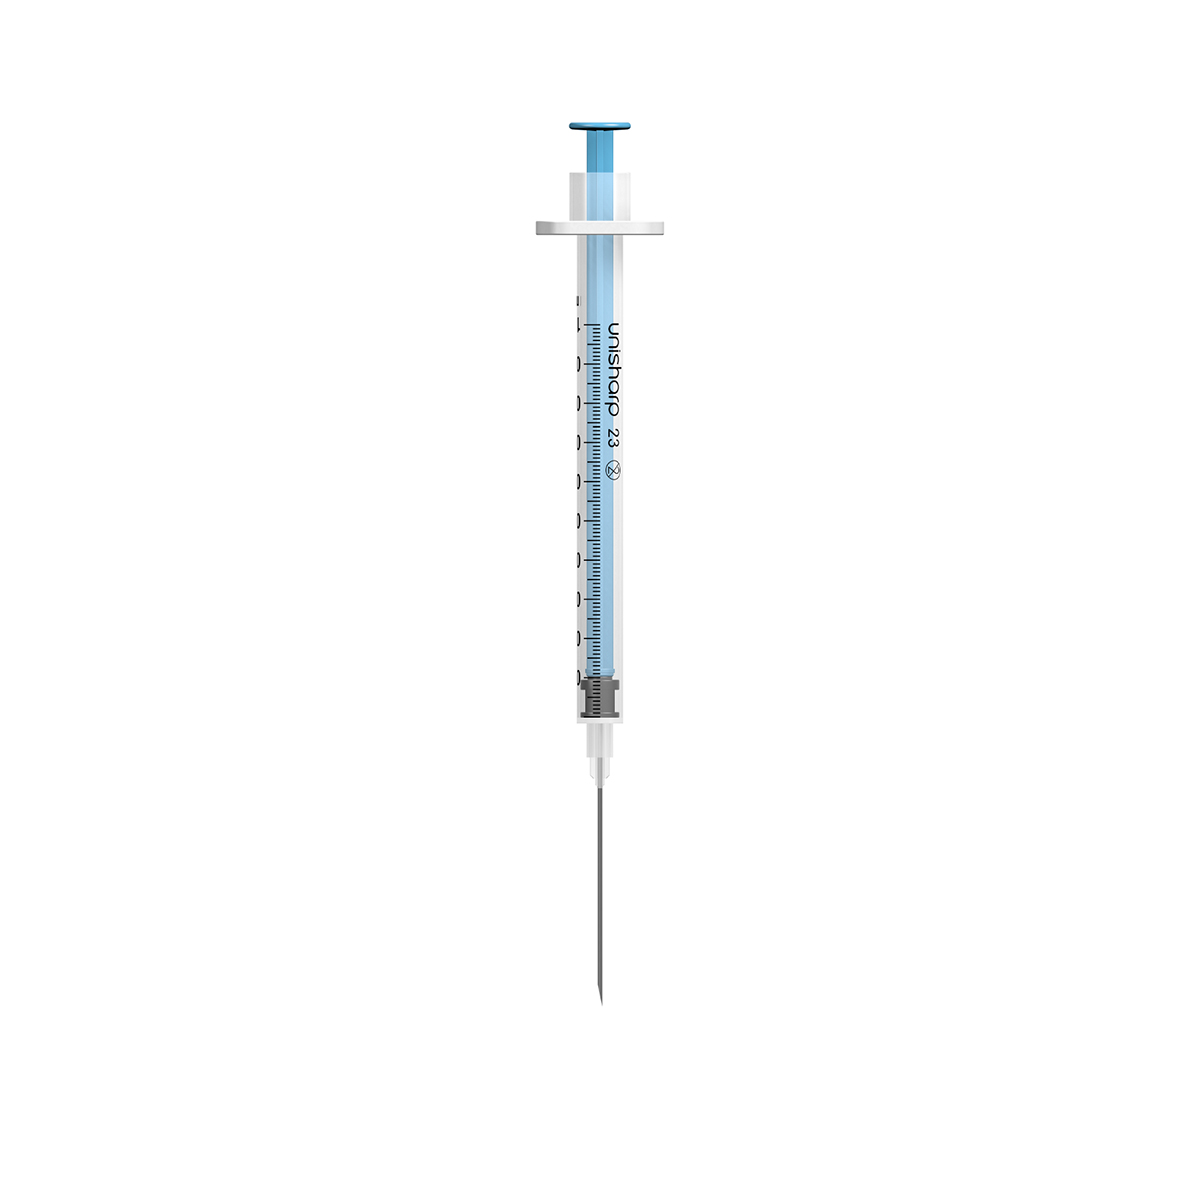 Unisharp 1ml 23G 32mm (1¼ inch) fixed blue needle syringe